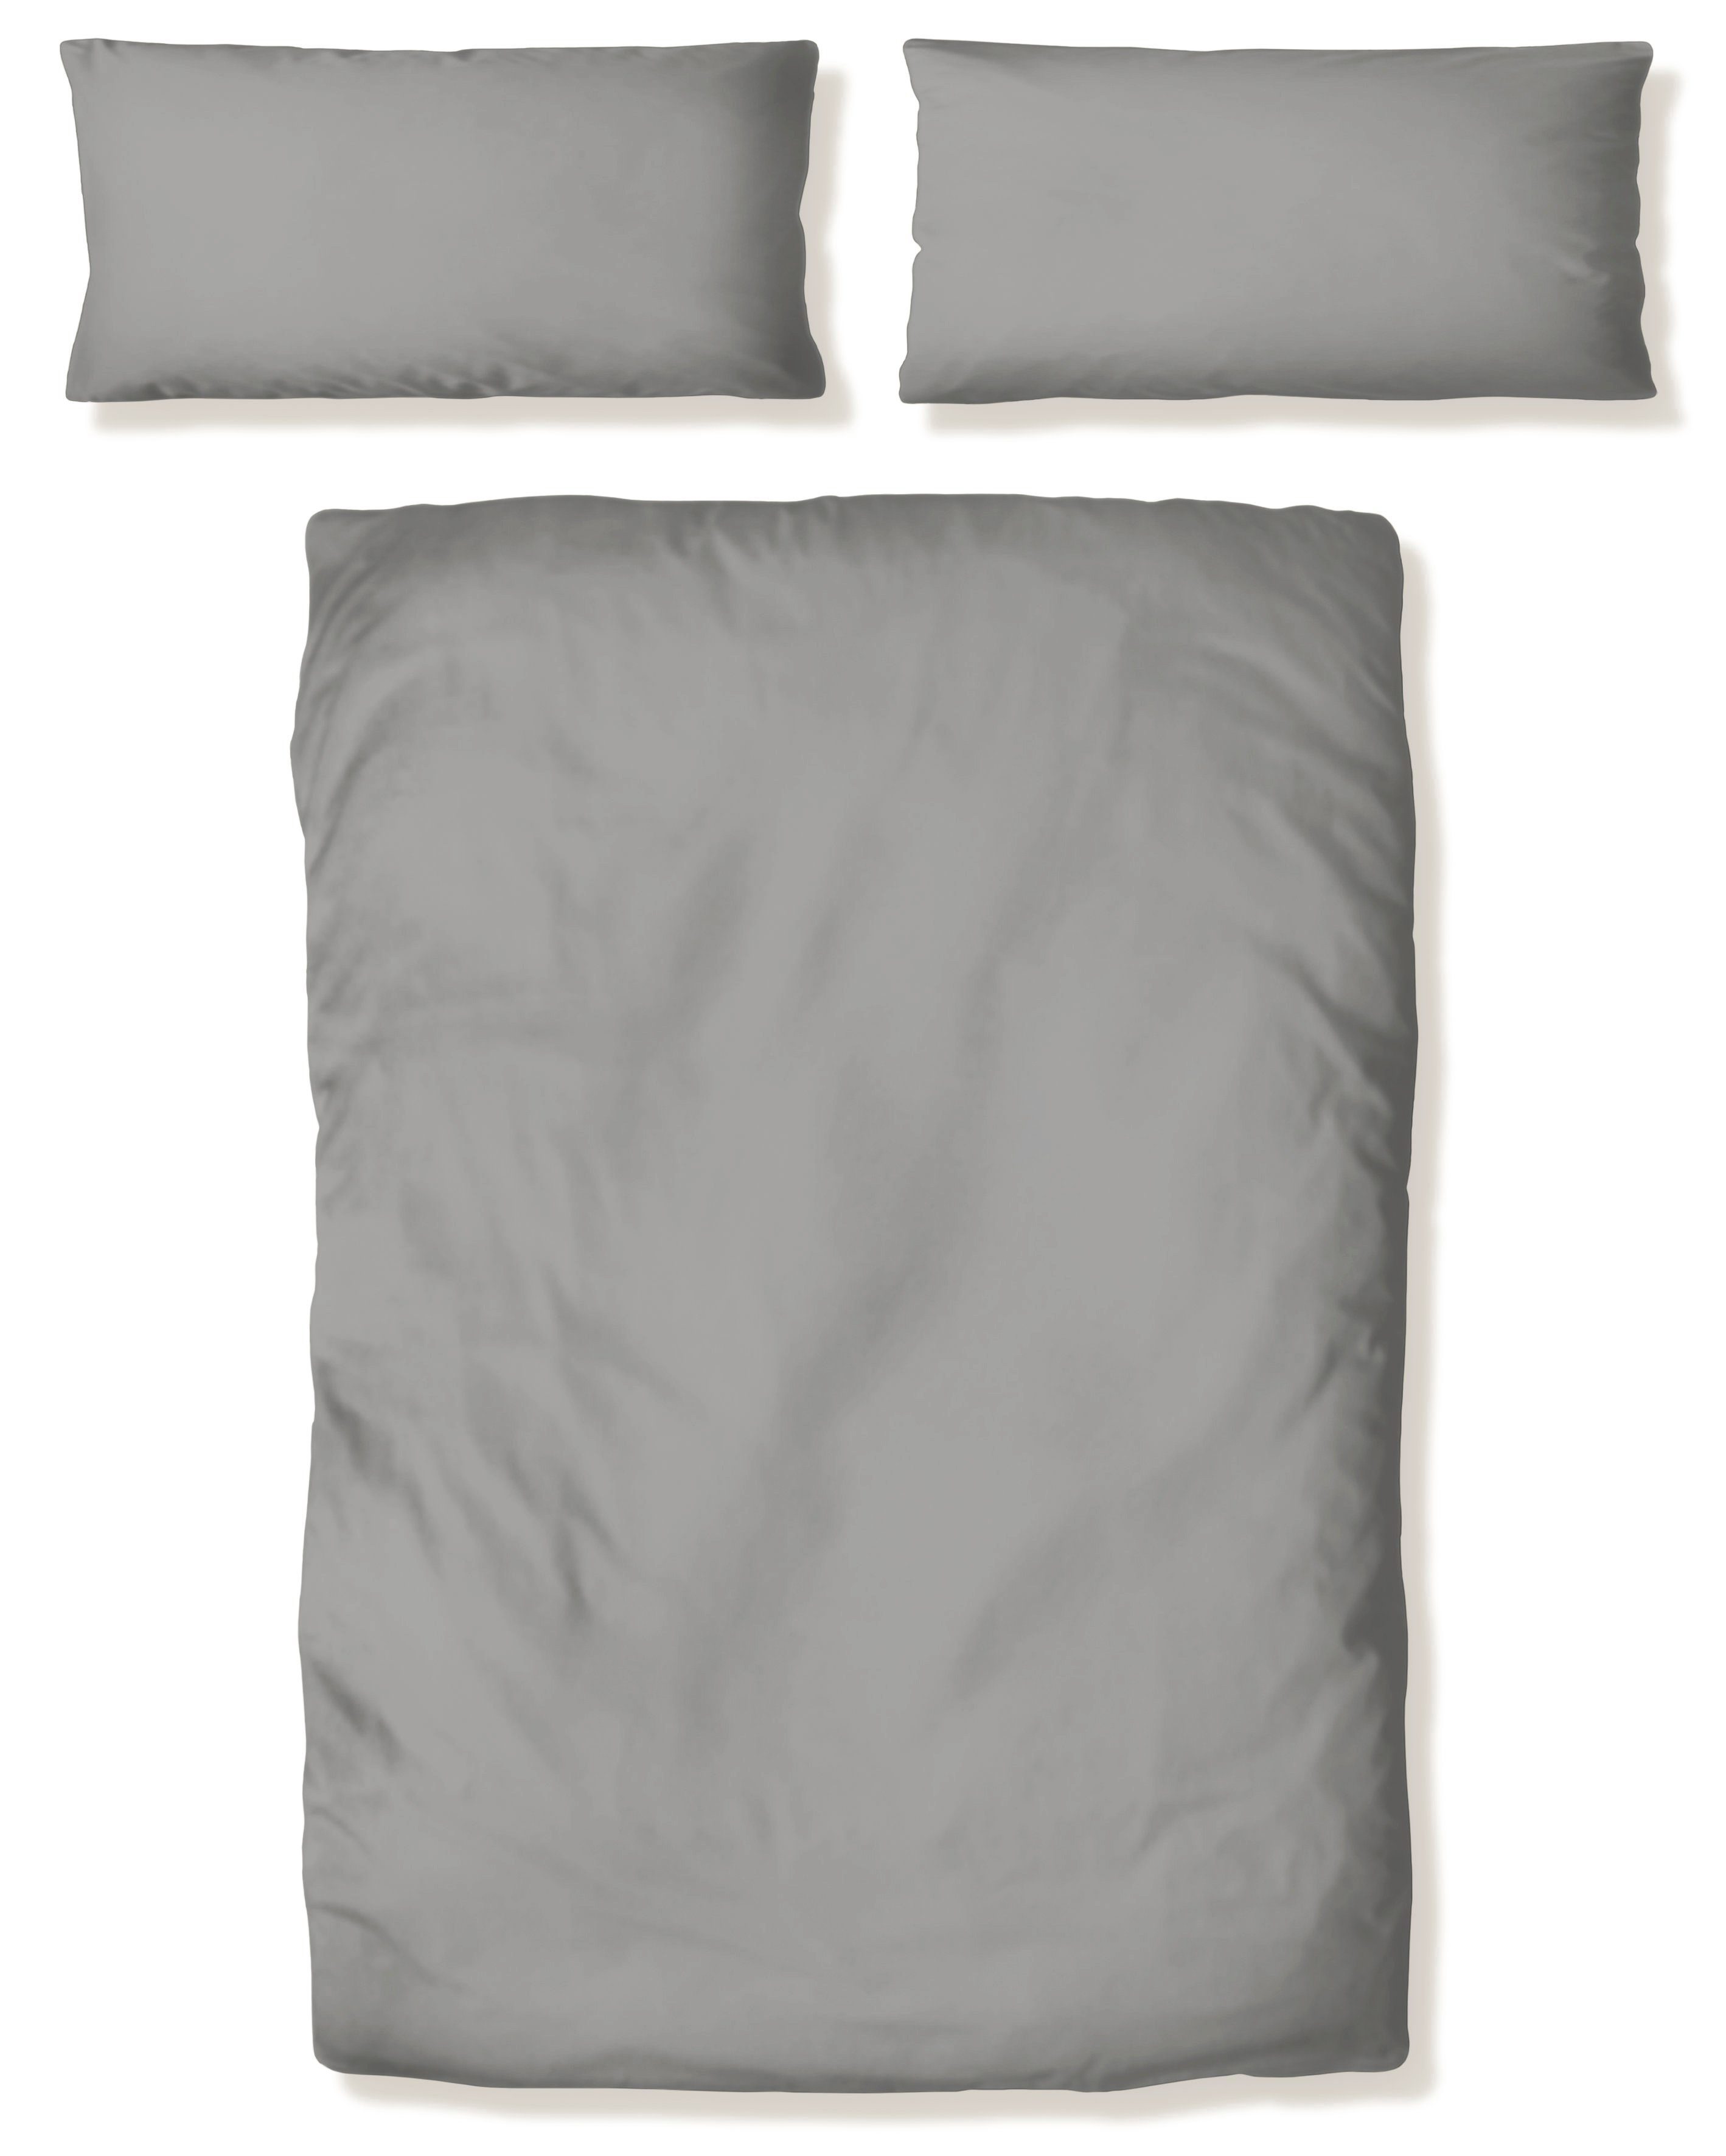 Bettwäsche Desner in Gr. 135x200 oder 155x220 cm, my home, Microfaser, 2  teilig, 100 % Poyester, sehr weich, unifarbene Bettwäsche